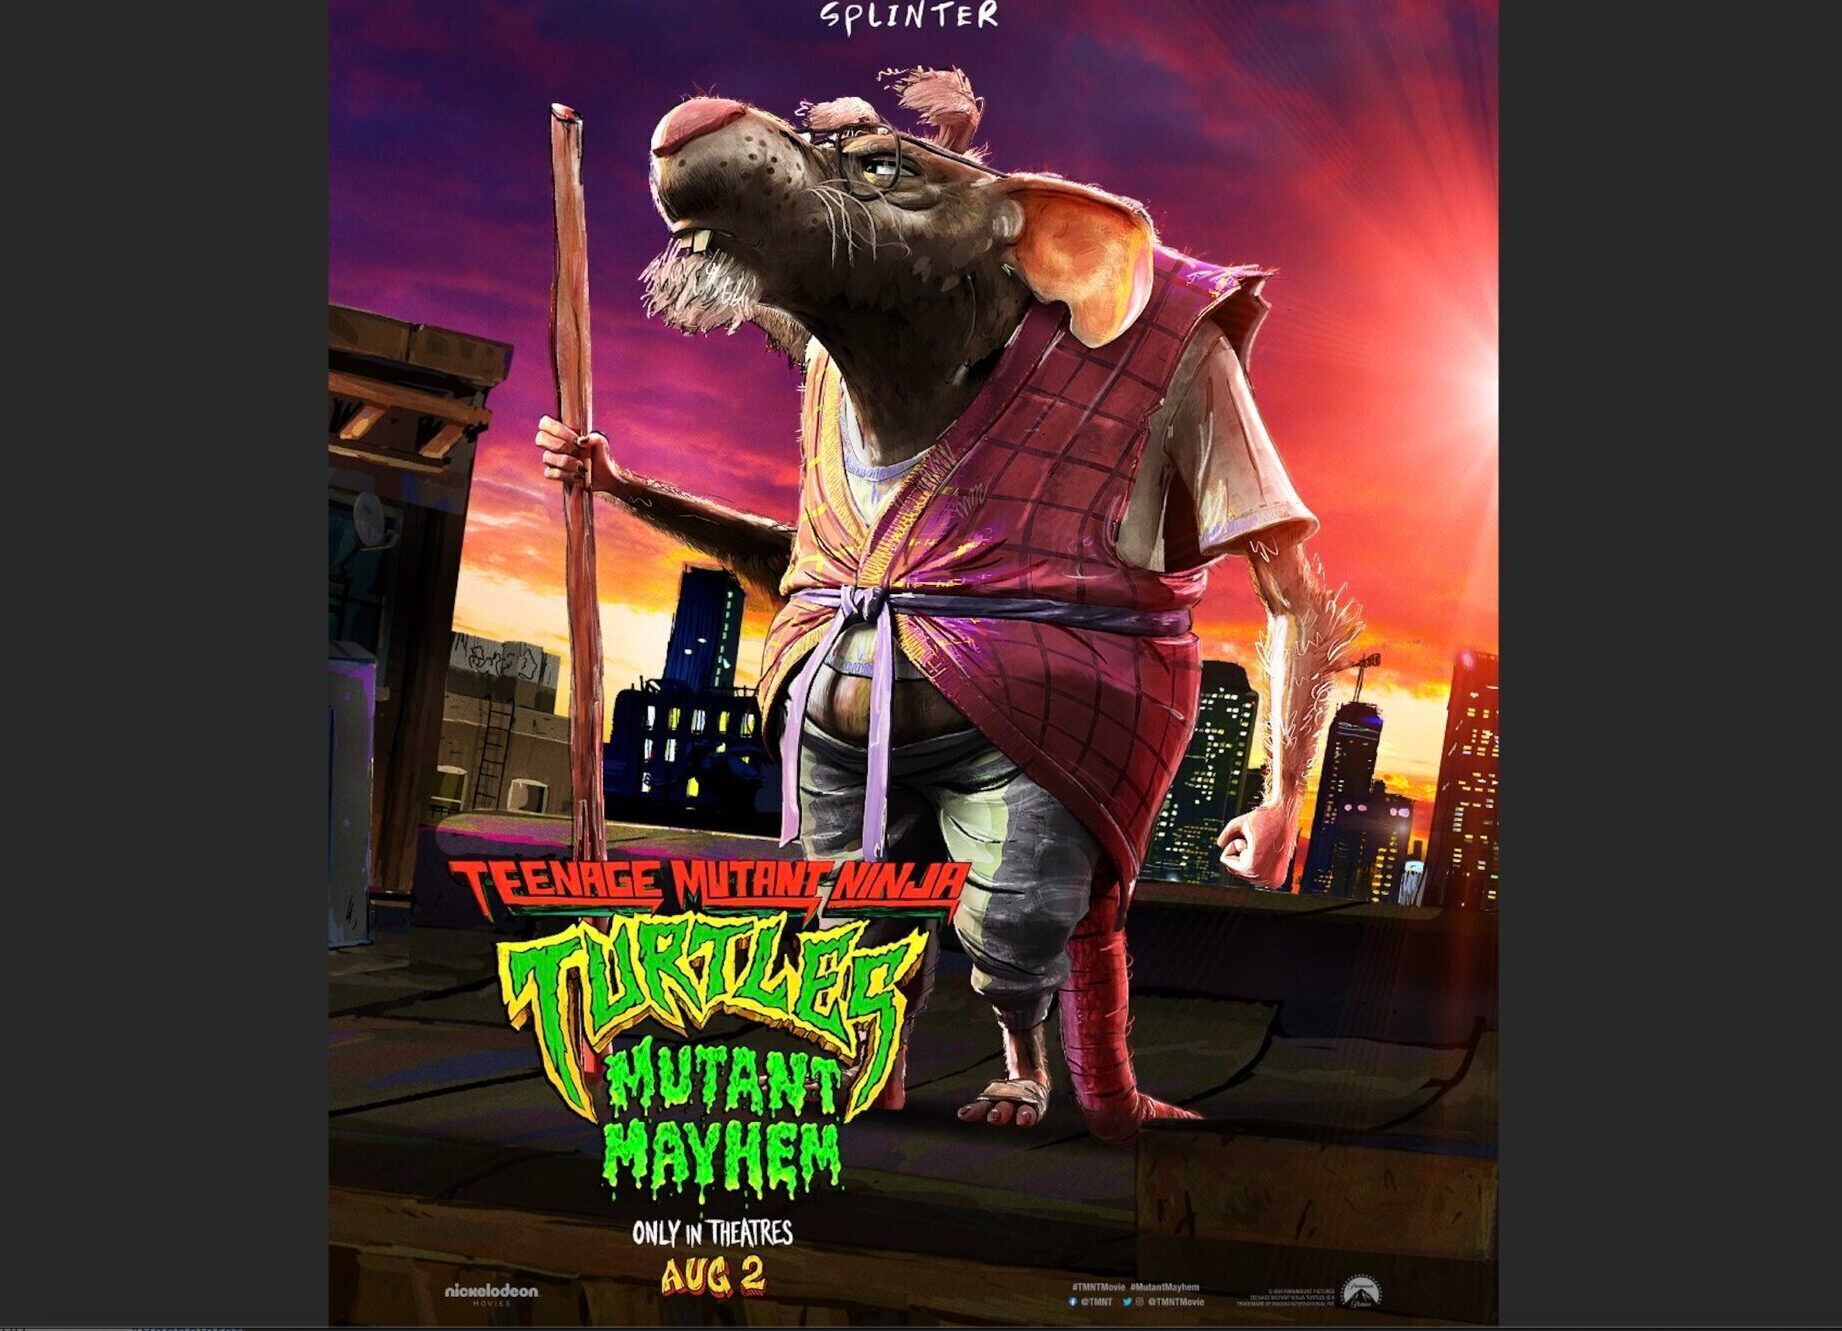 Teenage Mutant Ninja Turtles: Mutant Mayhem movie poster featuring Splinter the rat